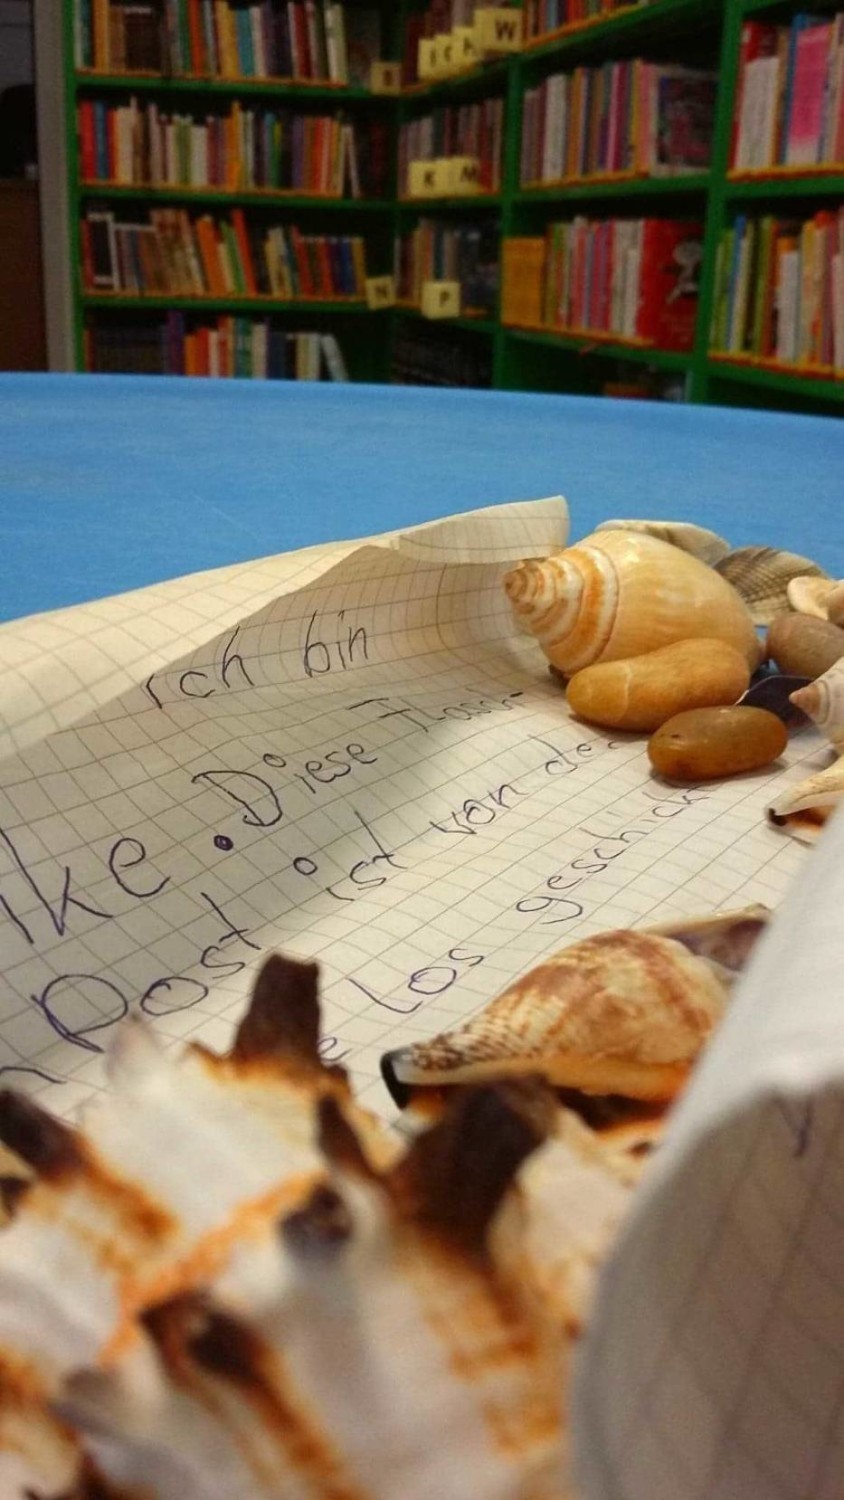 Gdyńskie bibliotekarki dostały odpowiedź od dziewczynki z Niemiec. Dalsza część niezwykłej historii listu w butelce [zdjęcia]